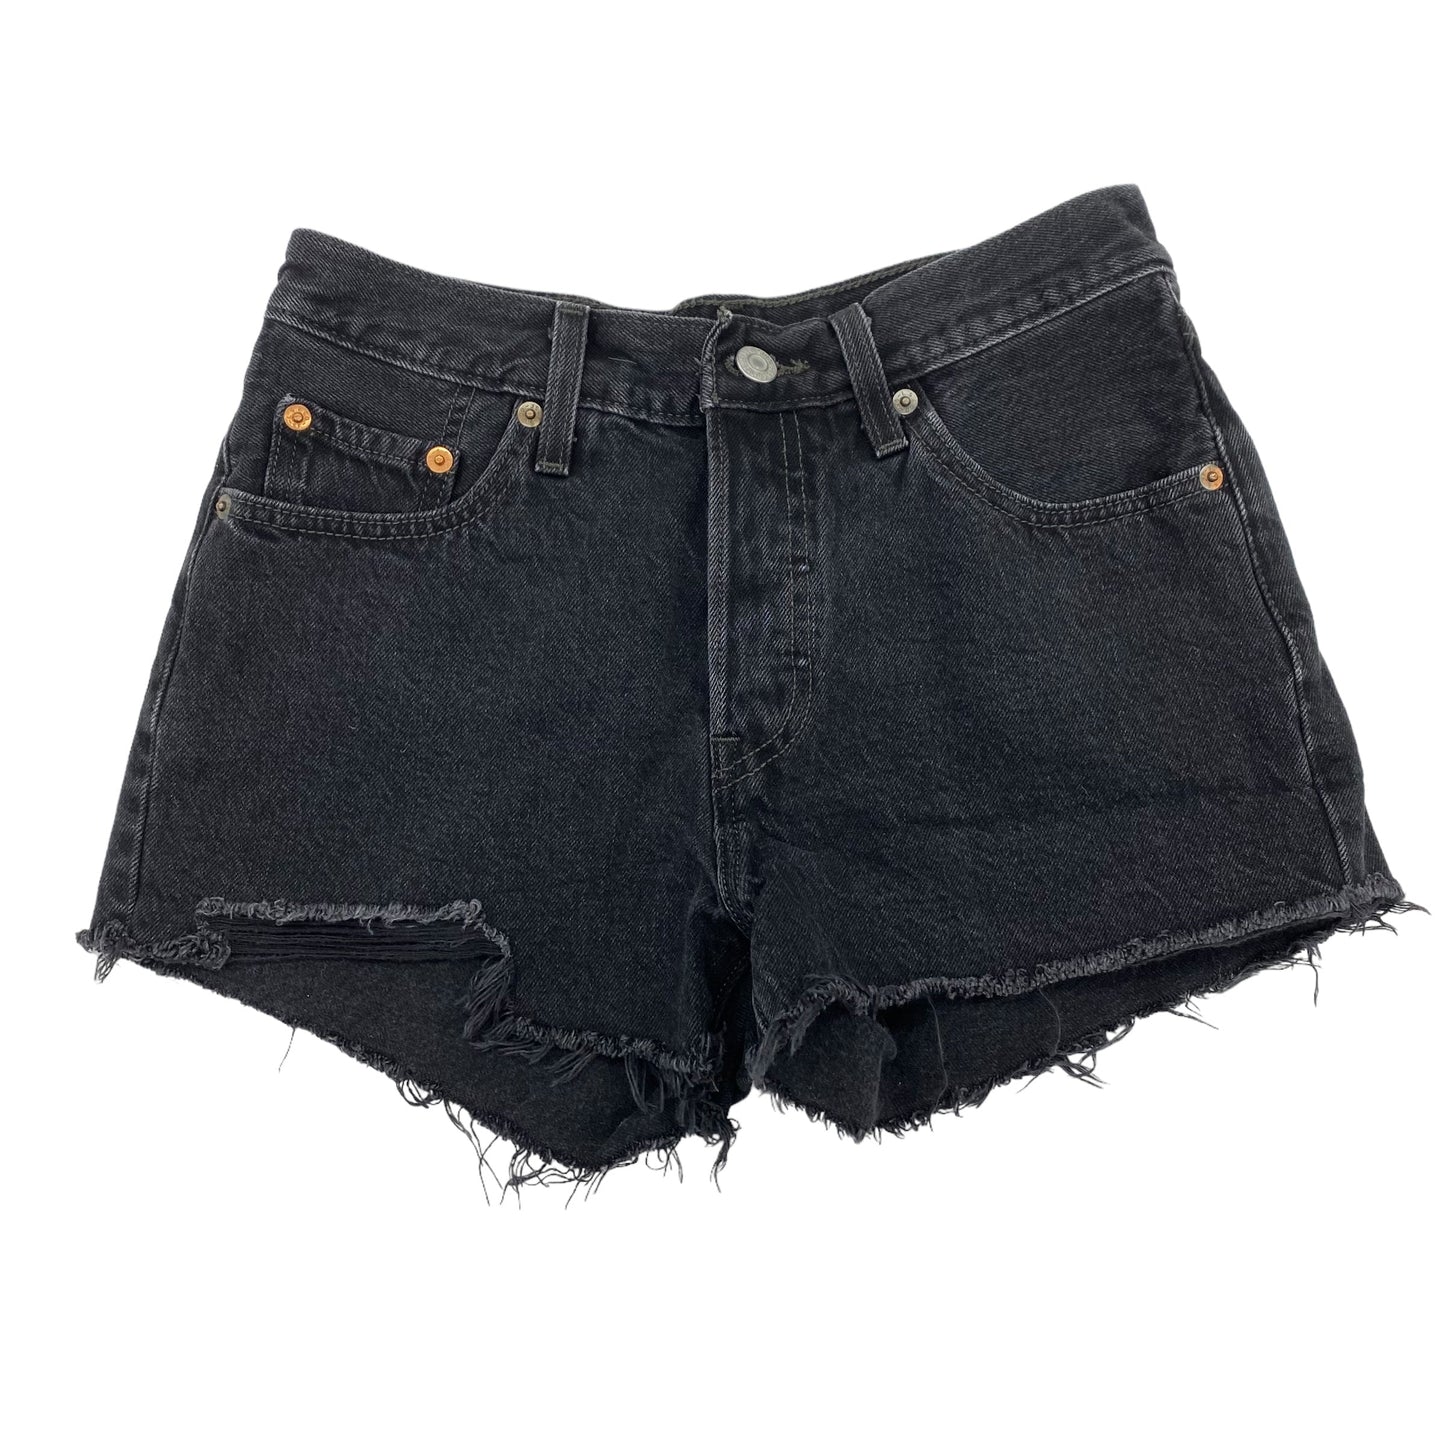 Black Denim Shorts Levis, Size 2